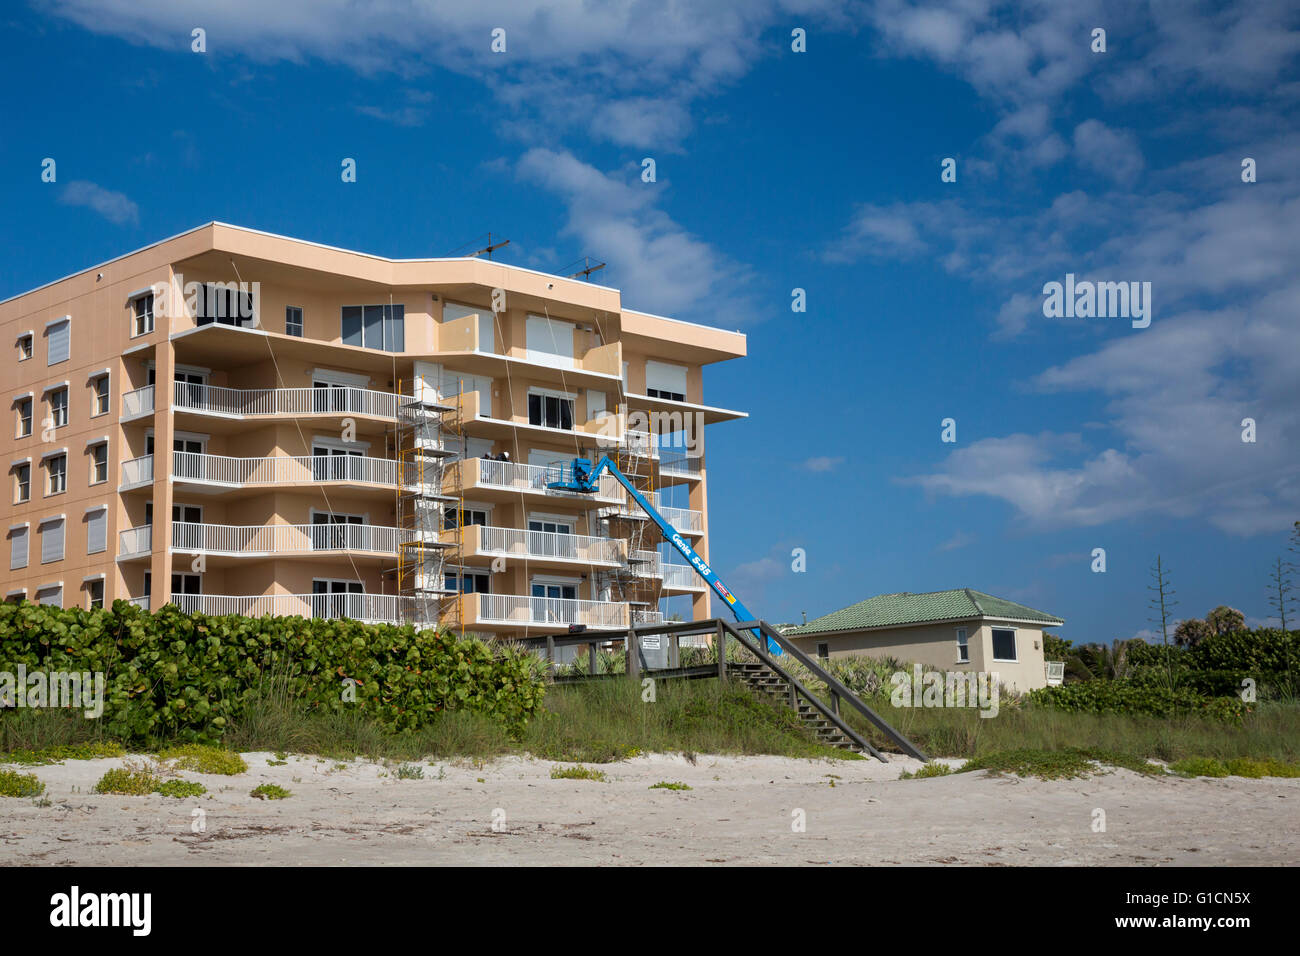 Indialantic, Floride - Un immeuble en copropriété en construction sur une île-barrière de la Floride. Banque D'Images